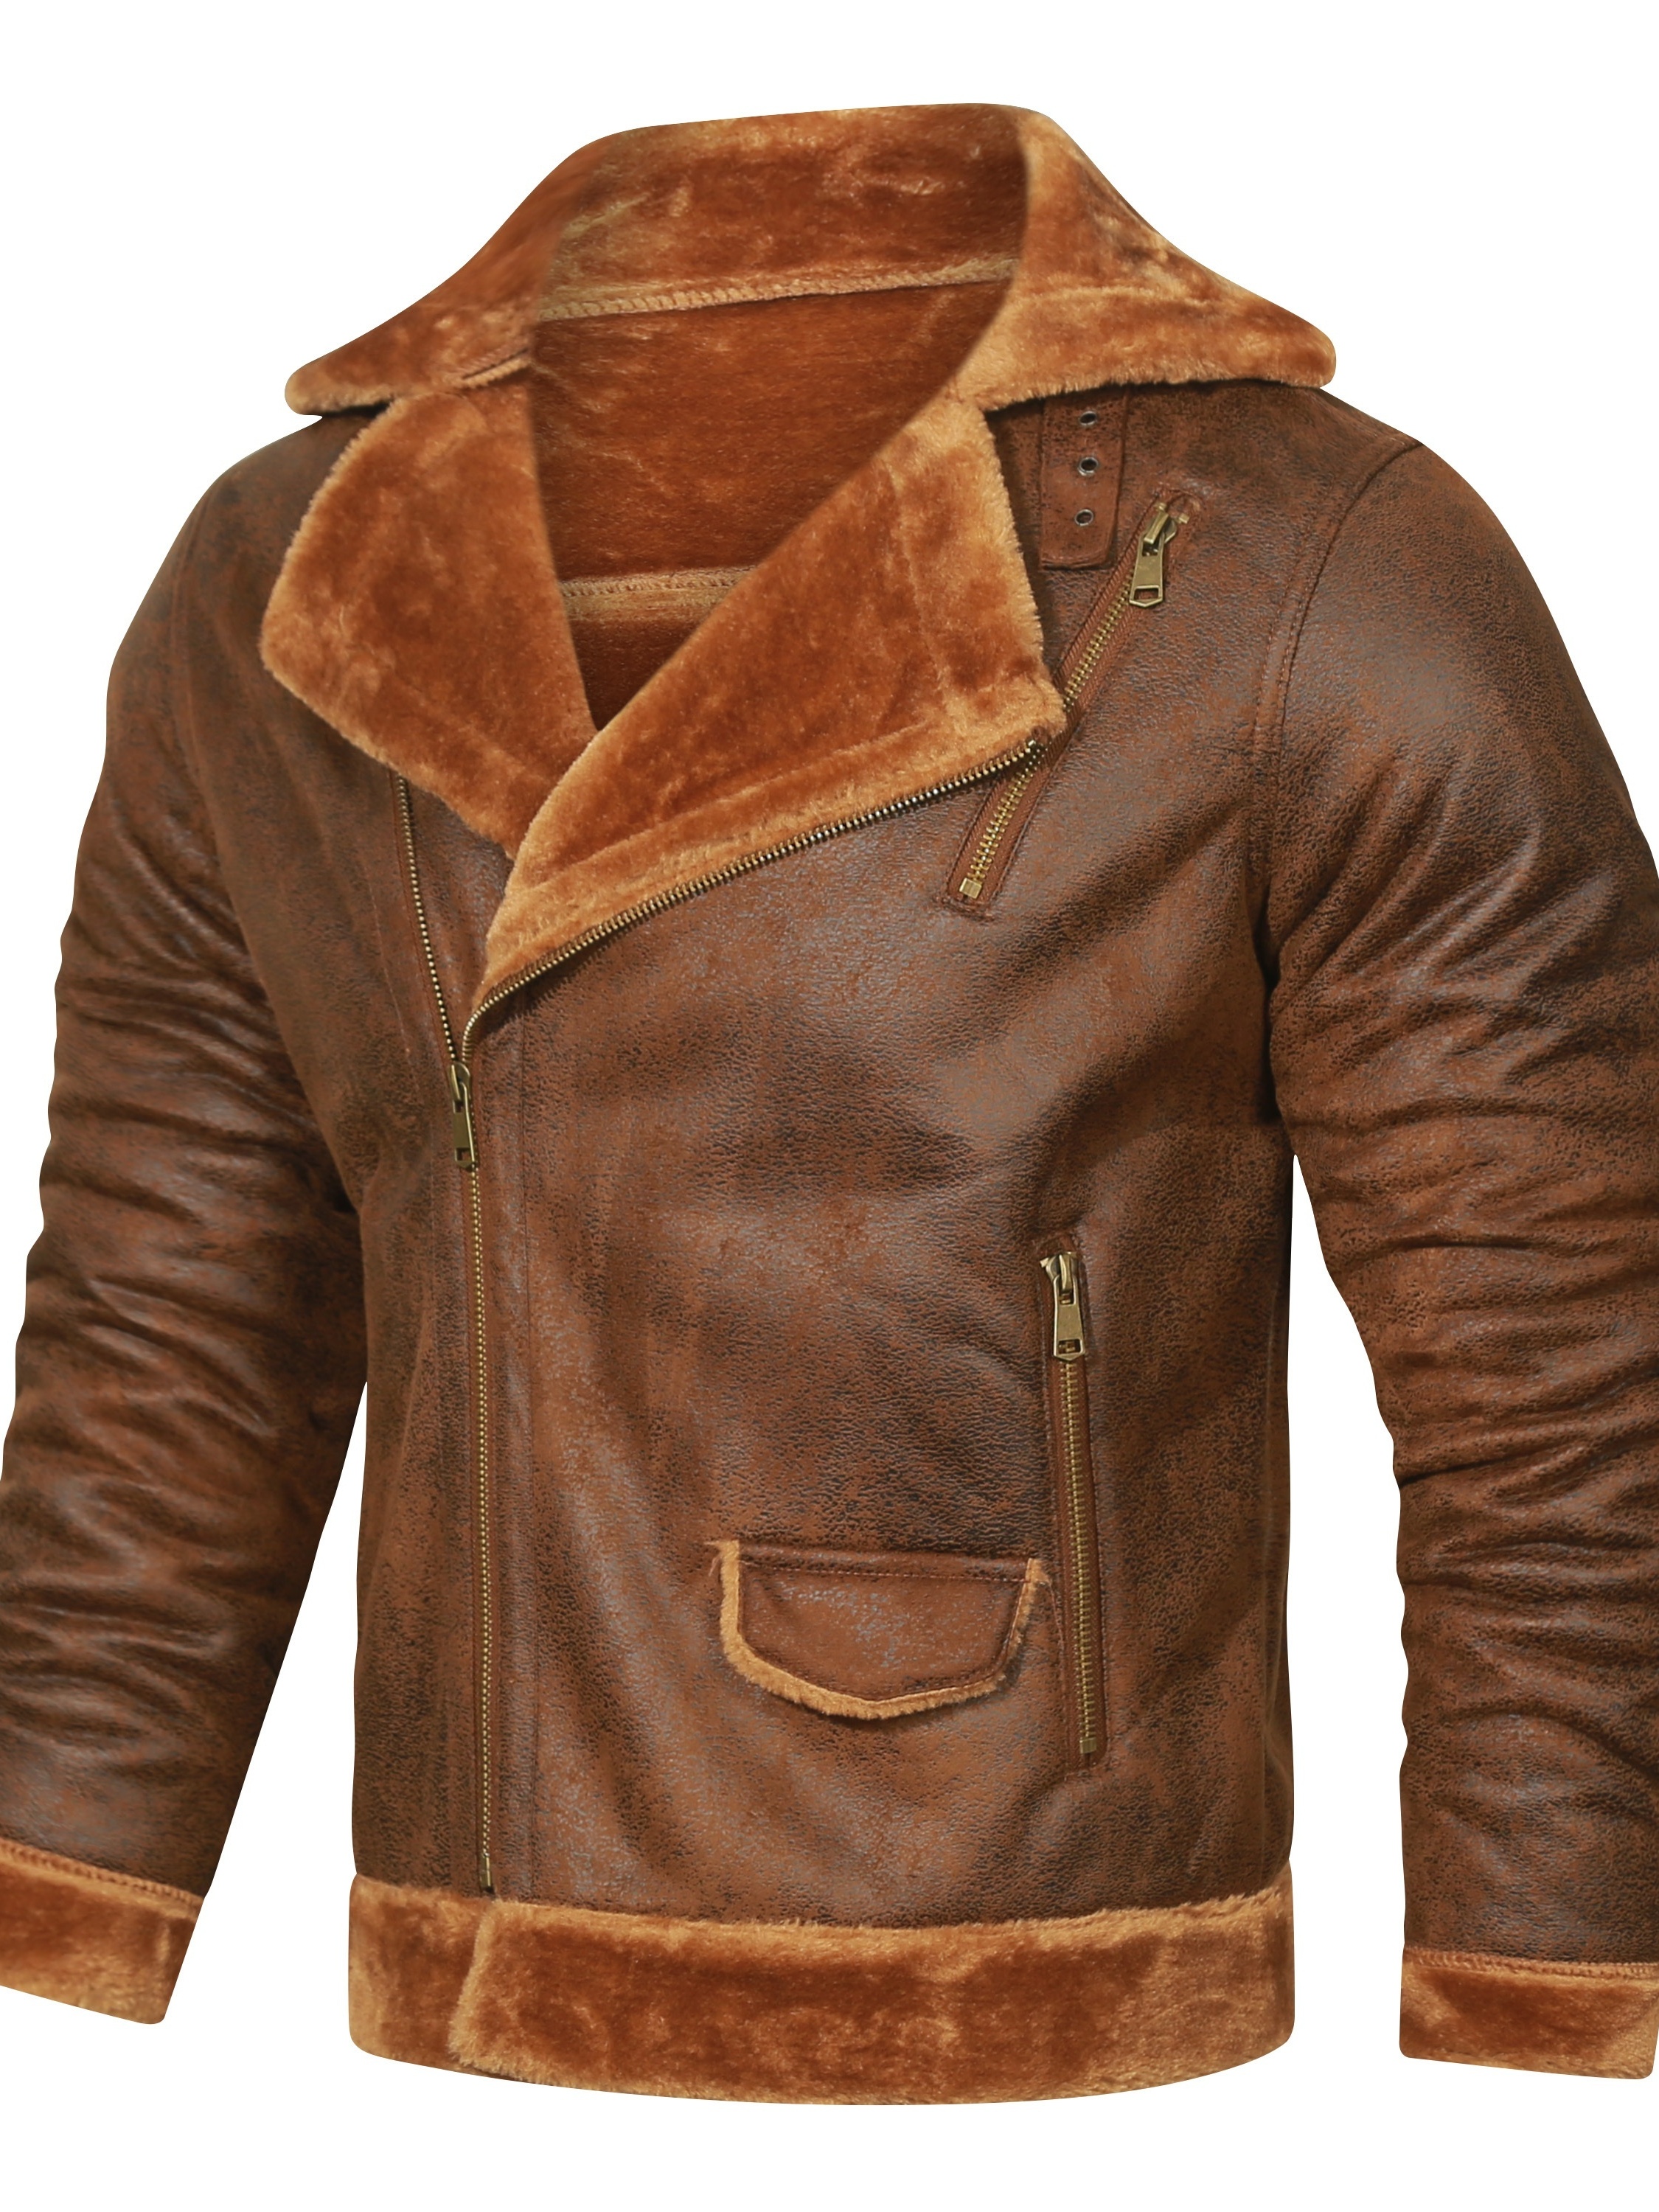 Warm Fleece Hooded PU Jacket, Men's Casual Winter Jacket Coat For Outdoor Activities